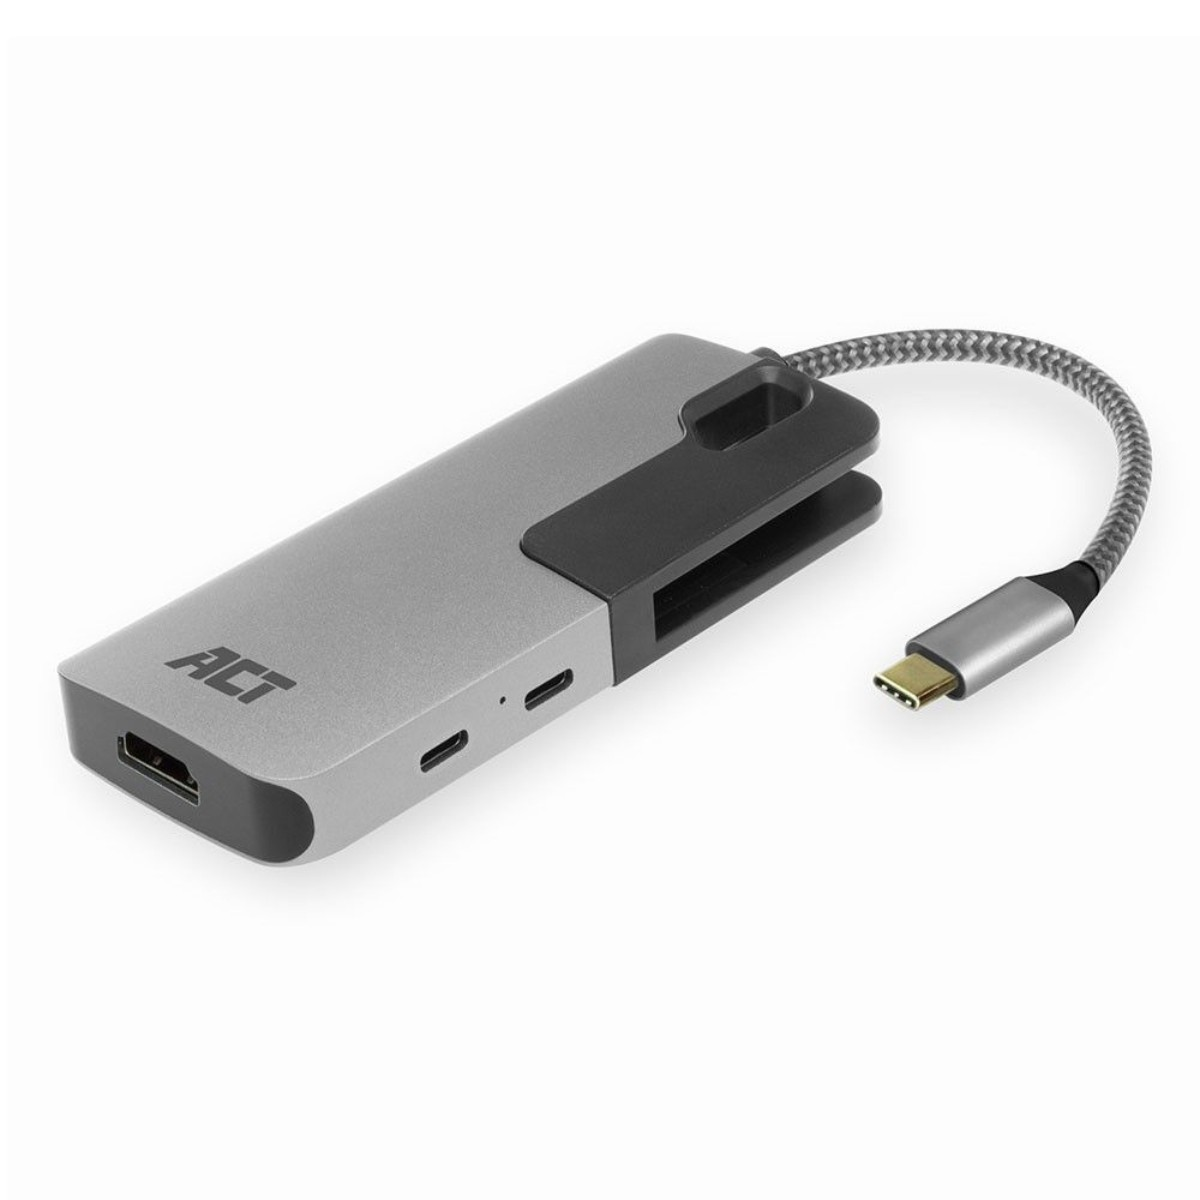 ACT AC7021, USB Hub, Grau